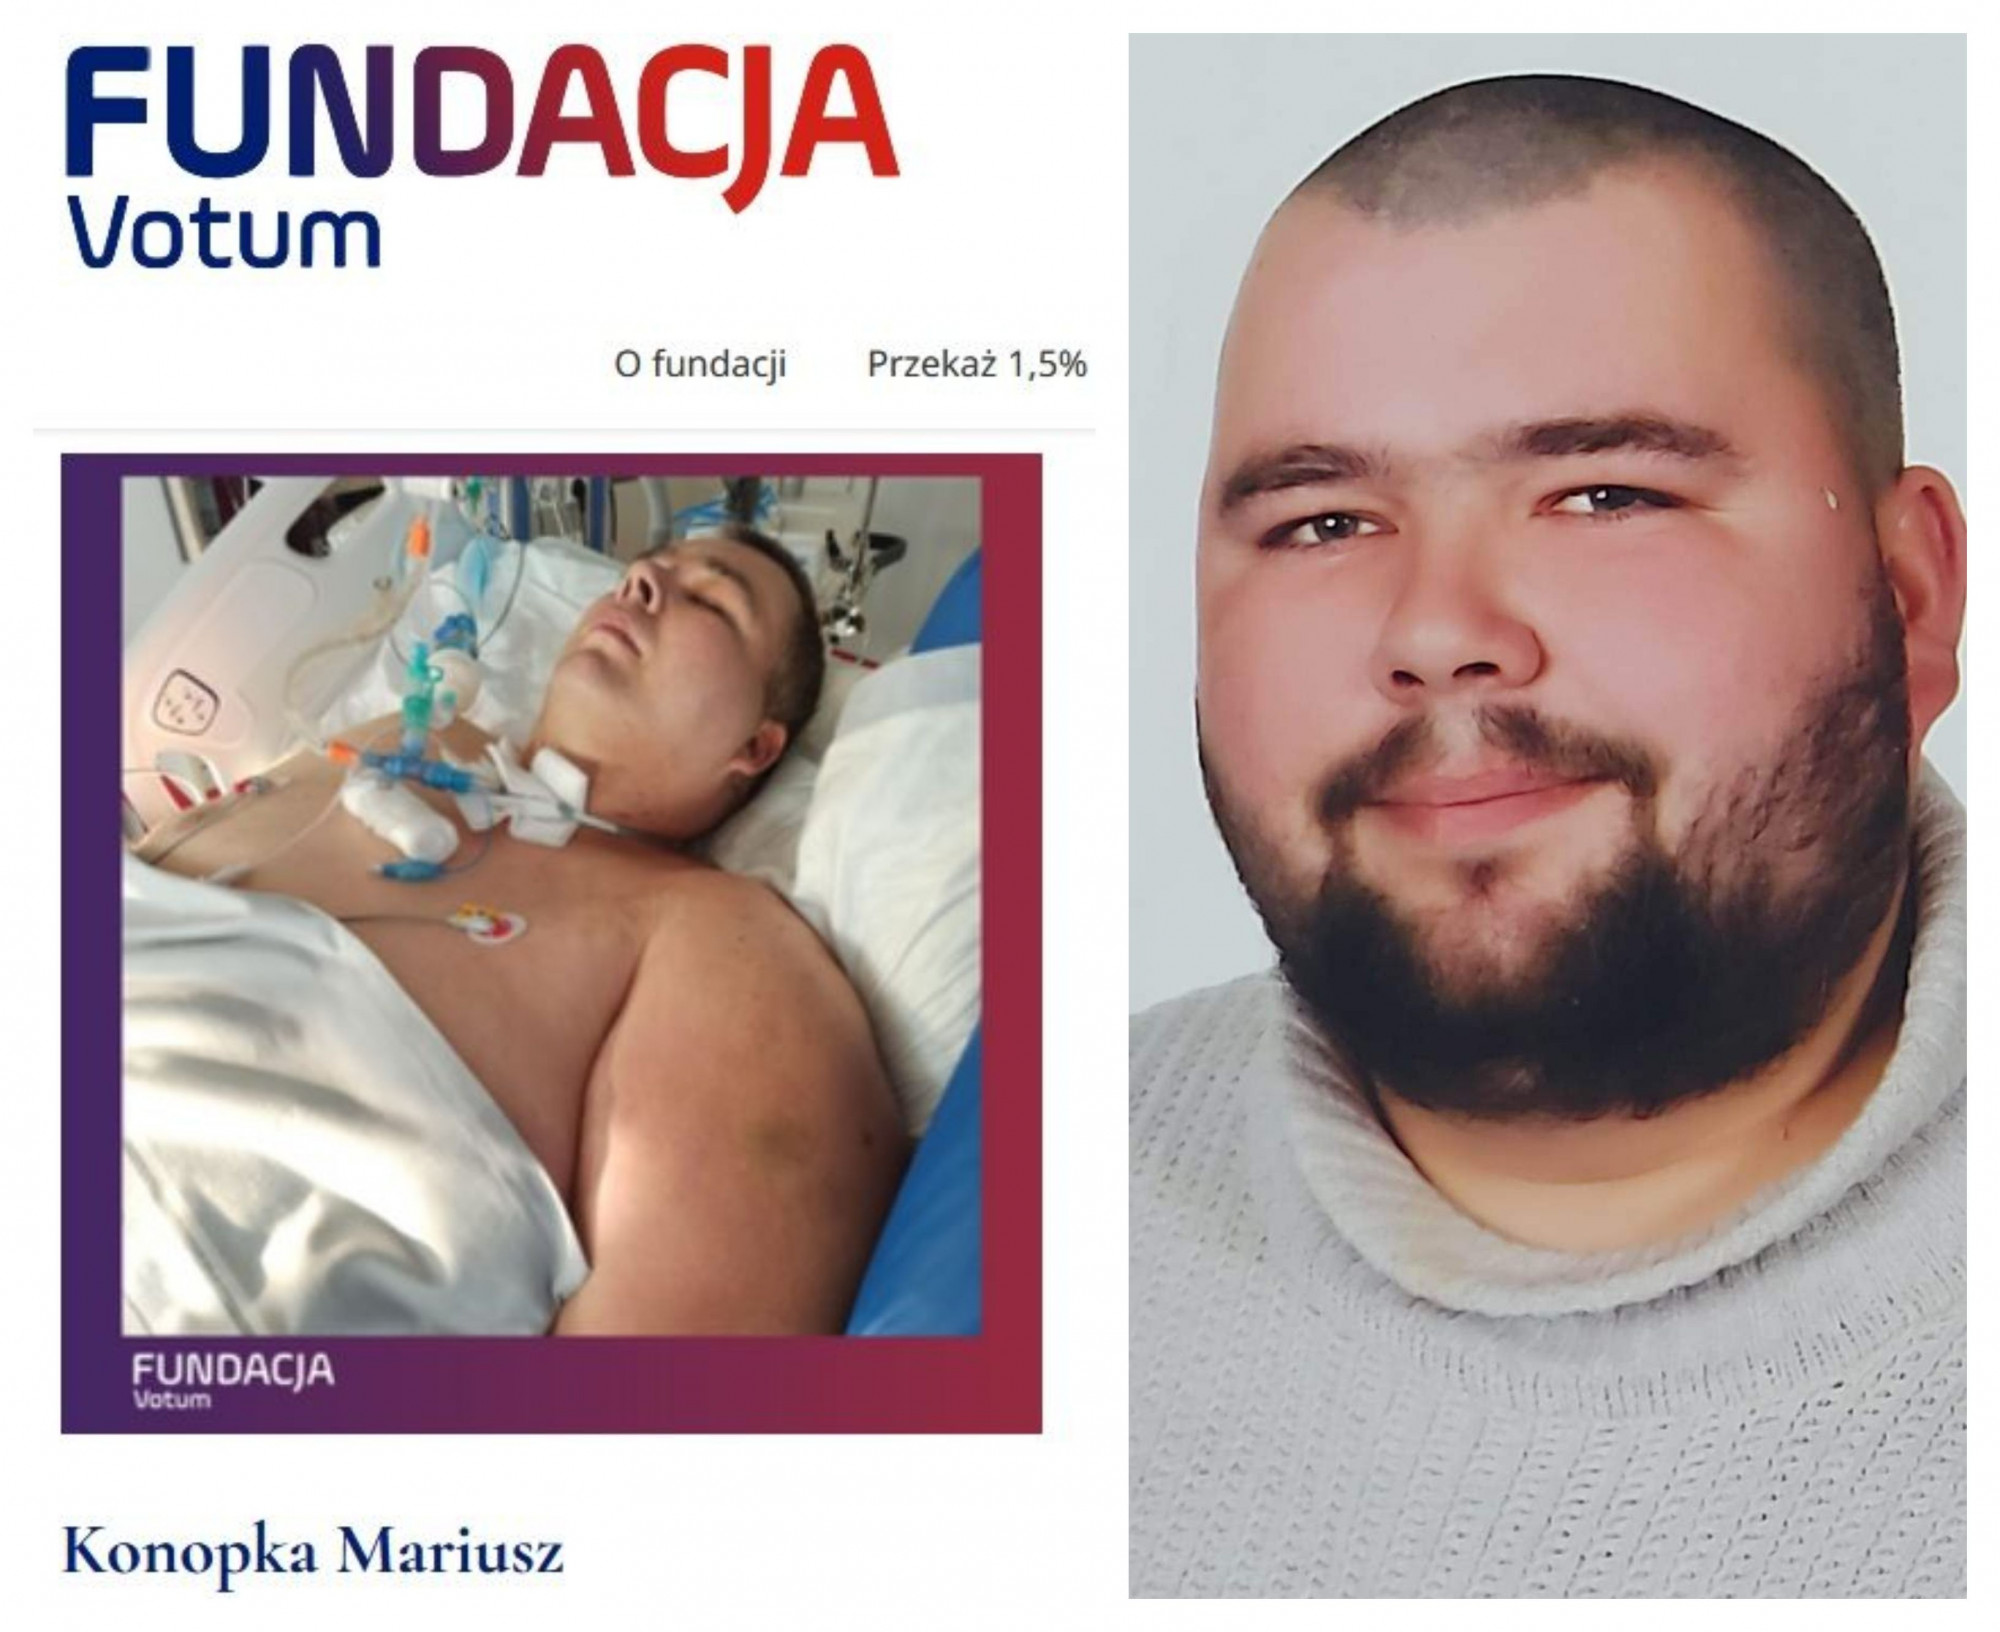 Zestawione dwa zdjęcia Mariusza Konopki - jedno z dowodu osobistego, drugie z pobytu w szpitalu.